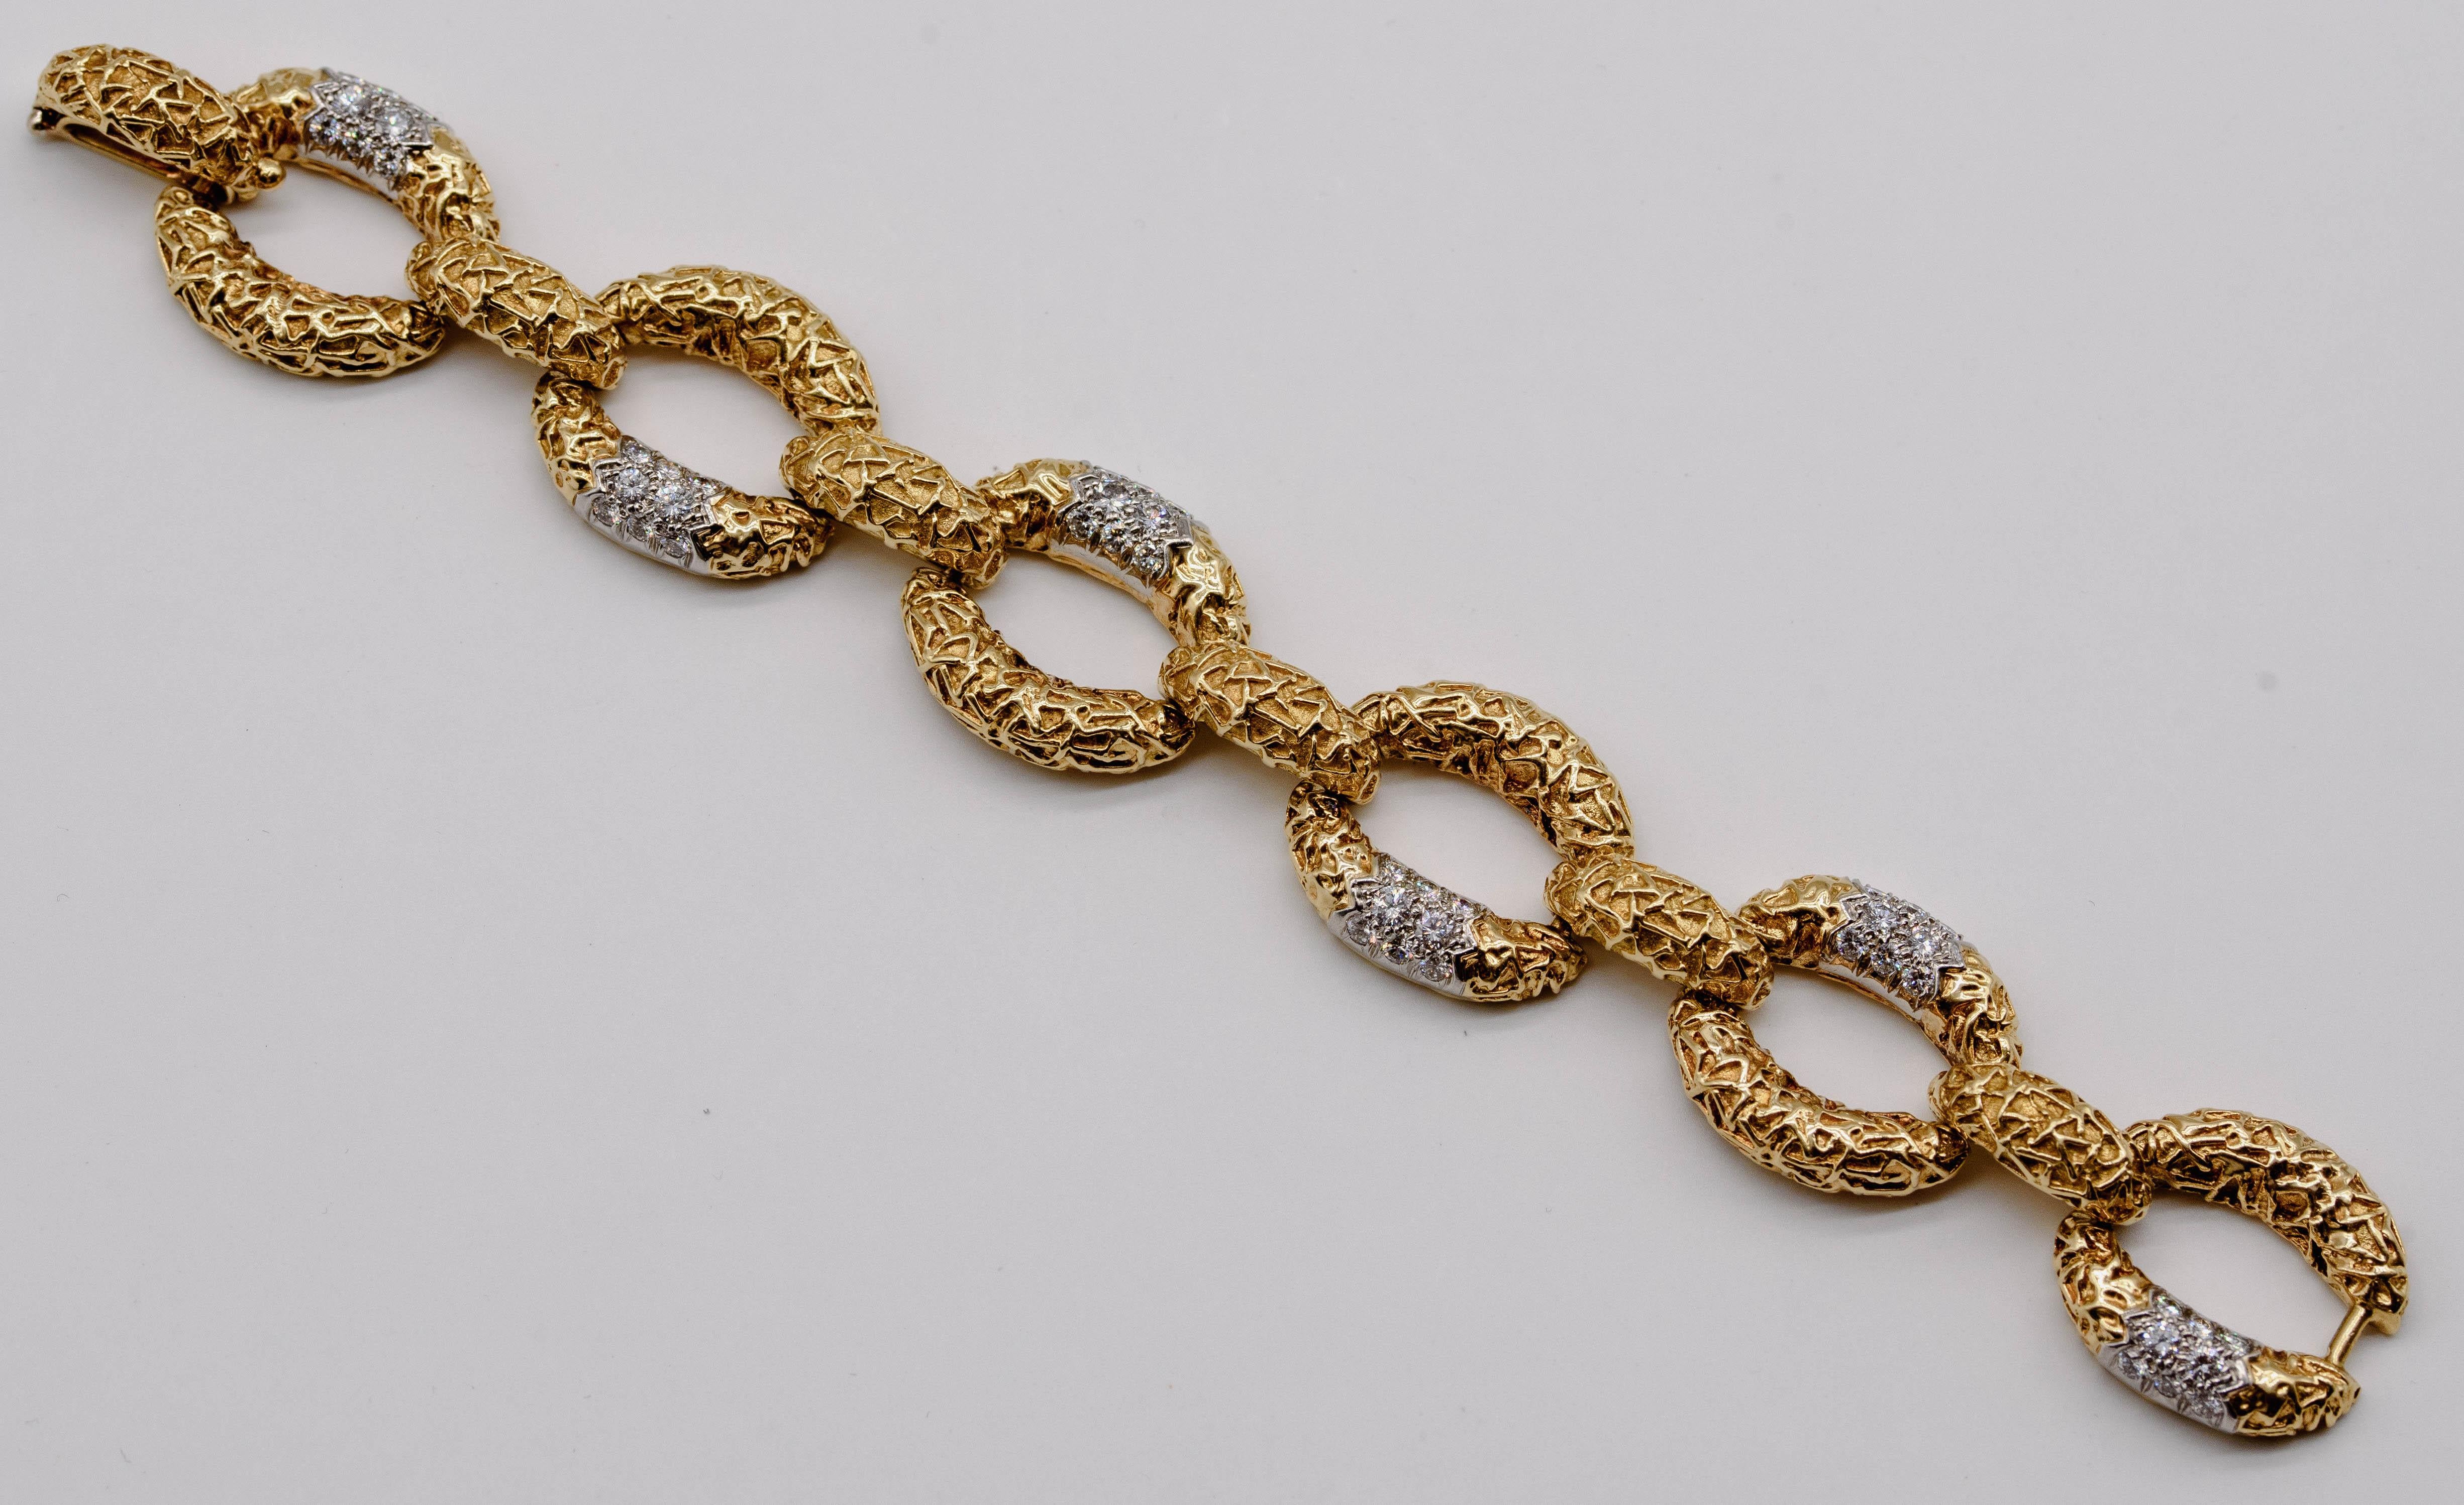 Véritable classique, ce bracelet sensationnel serait un gagnant même s'il ne portait pas la signature de Van Cleef & Arpels, l'un des noms les plus vénérés de la joaillerie signée. Le bracelet se compose de six maillons ovales en or 18 carats